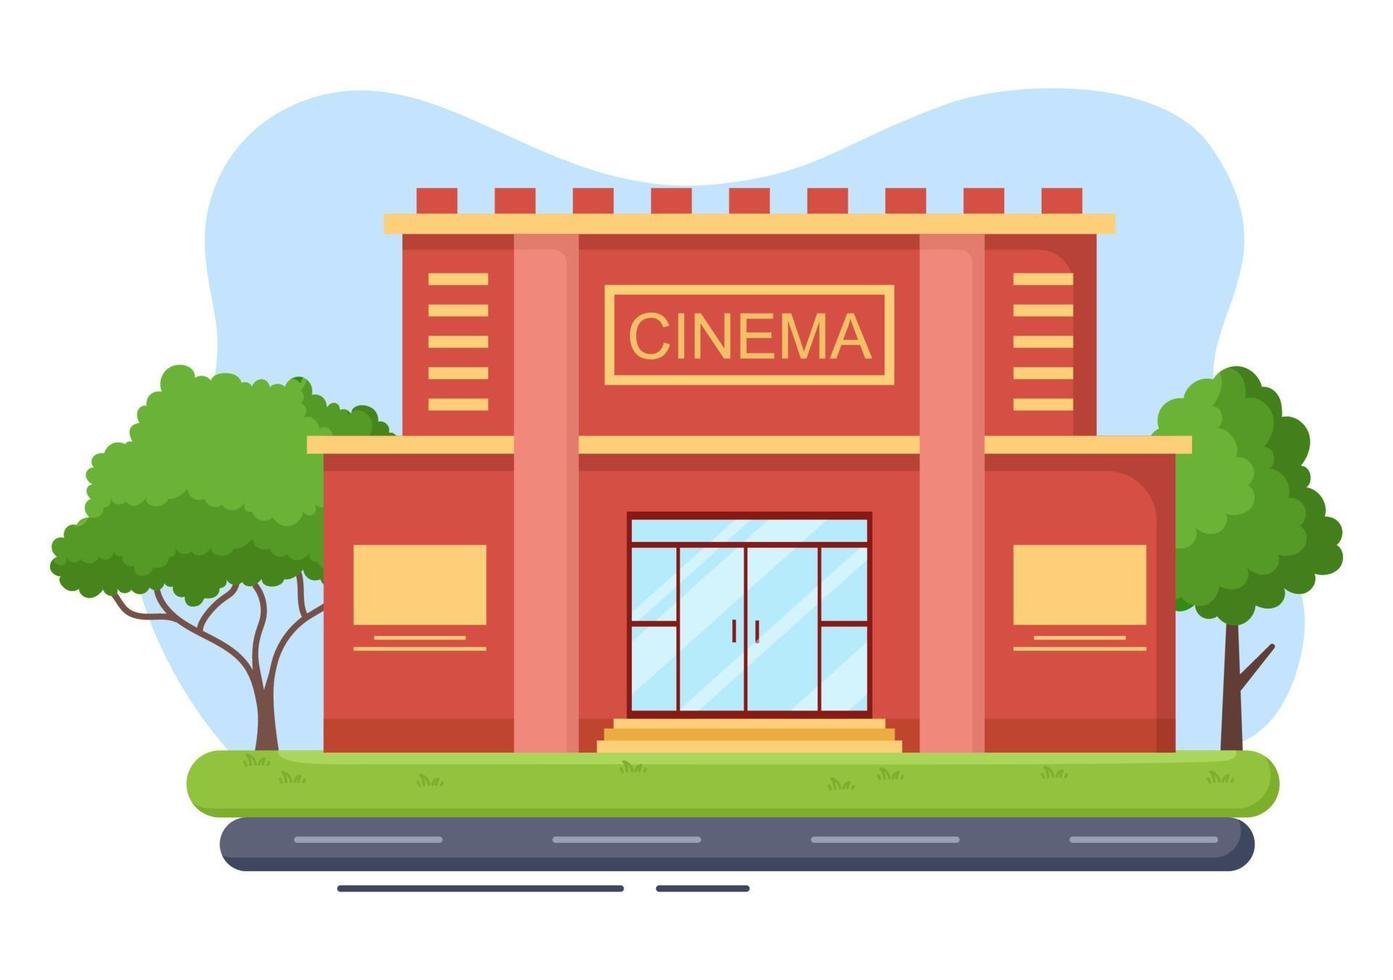 kinogebäude oder kino für moderne unterhaltungsindustrie, entspannung, film ansehen und zeigen in flacher hintergrundillustration vektor